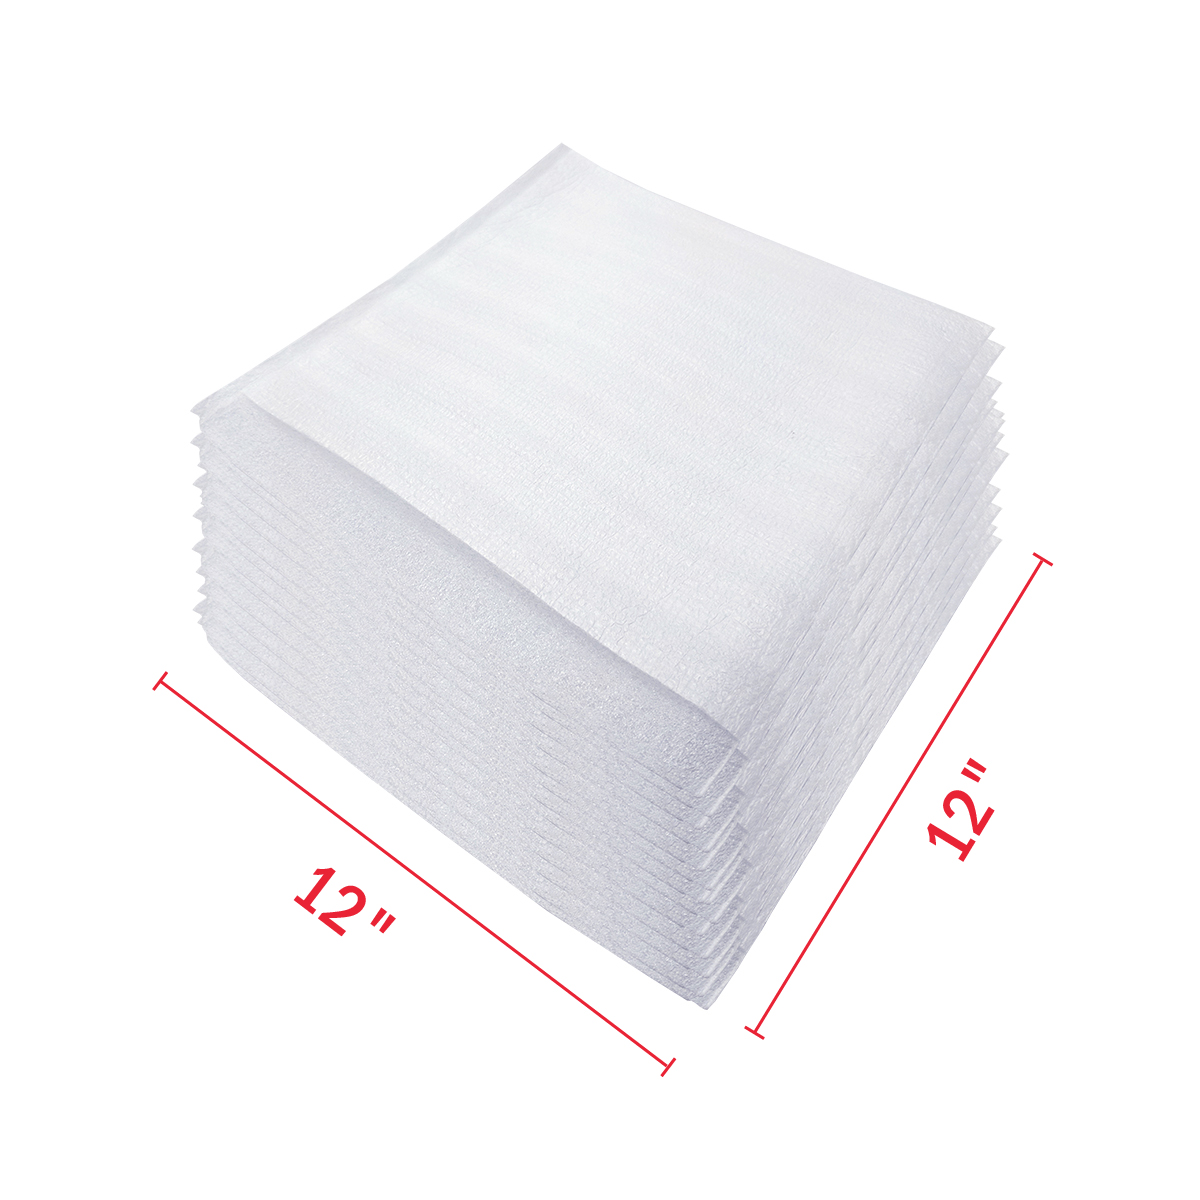 Foam Wrap Pouches / Packaging Foam Sleeves 12 x 12 - 50 Packs